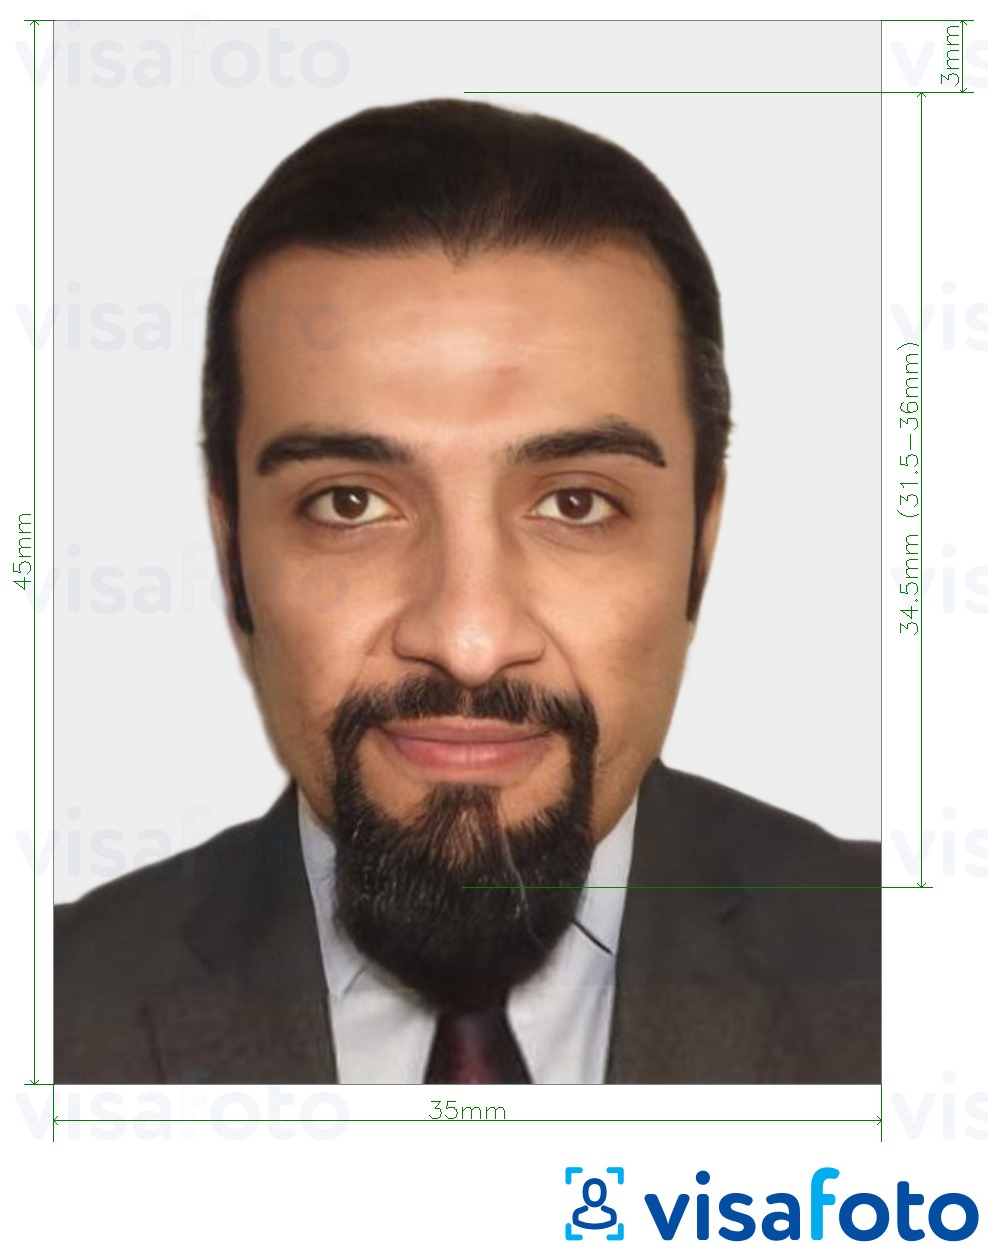 Esempio di foto per Carta d'identità Mauritania 35x45 mm (3,5x4,5 cm) con specifiche delle dimensioni esatte